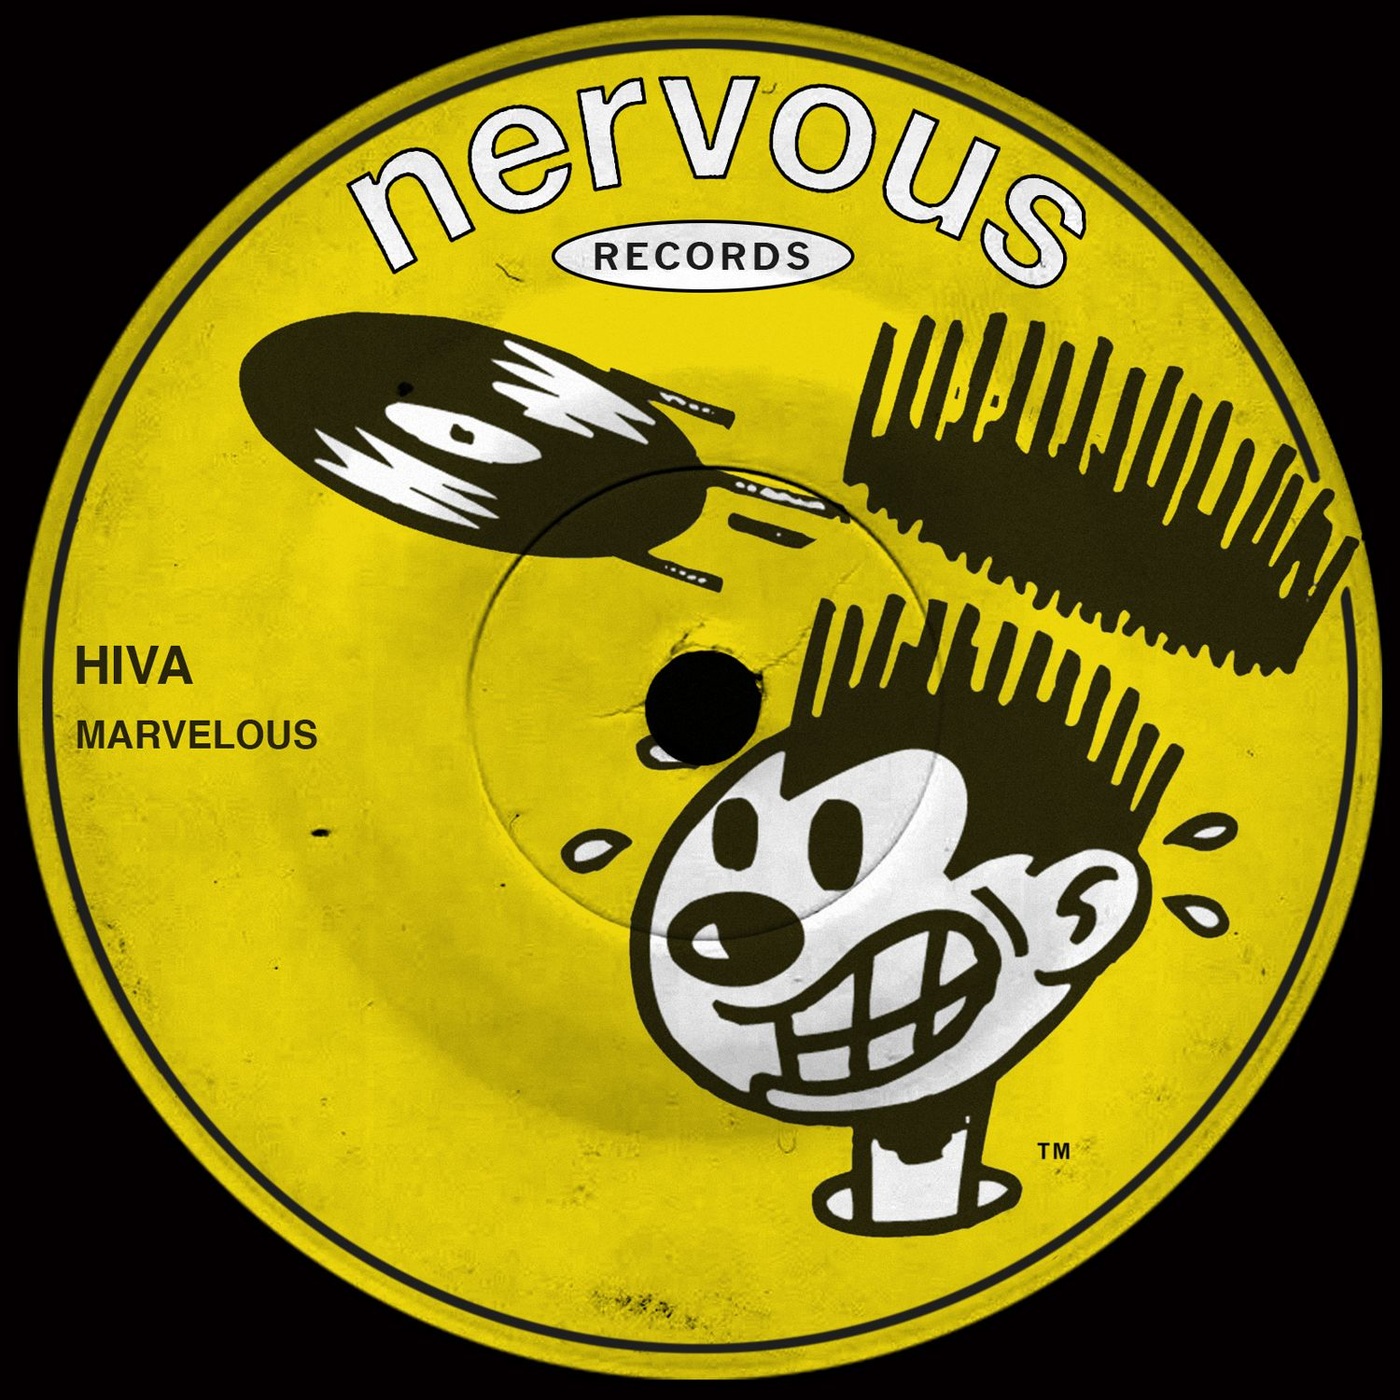 Hiva - Marvelous / Nervous Records